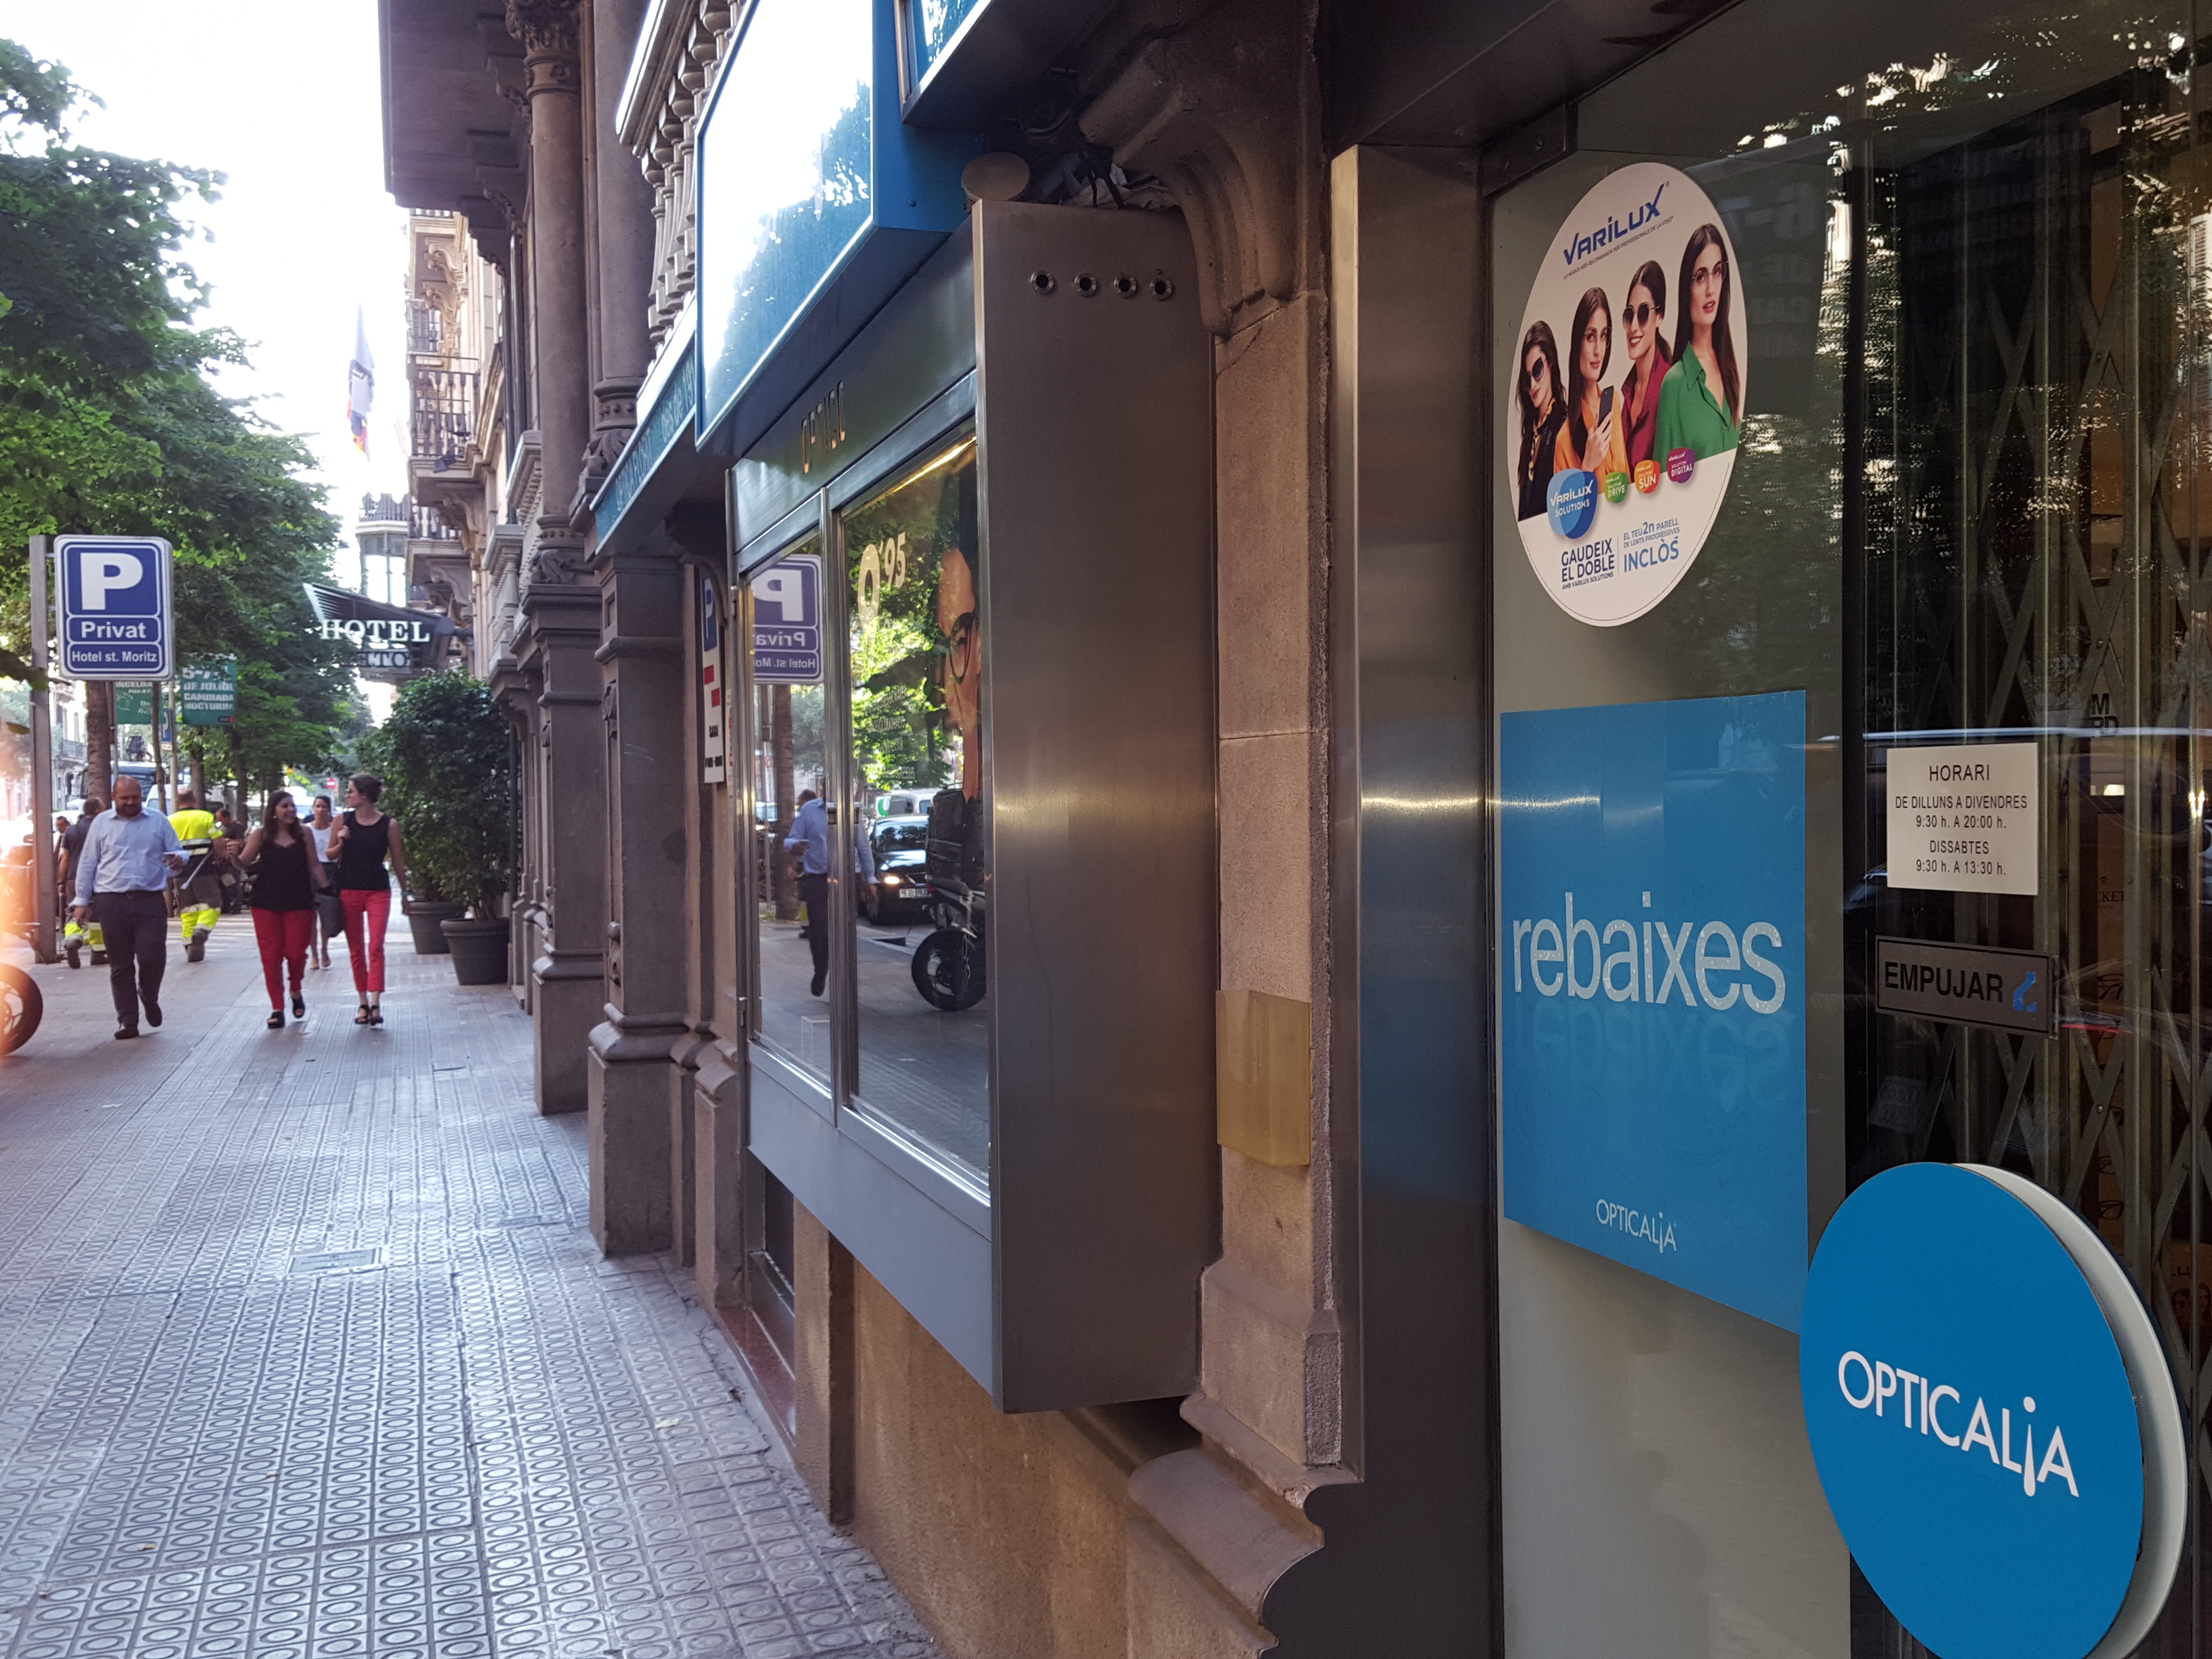 Establecimiento de Opticalia en Barcelona.